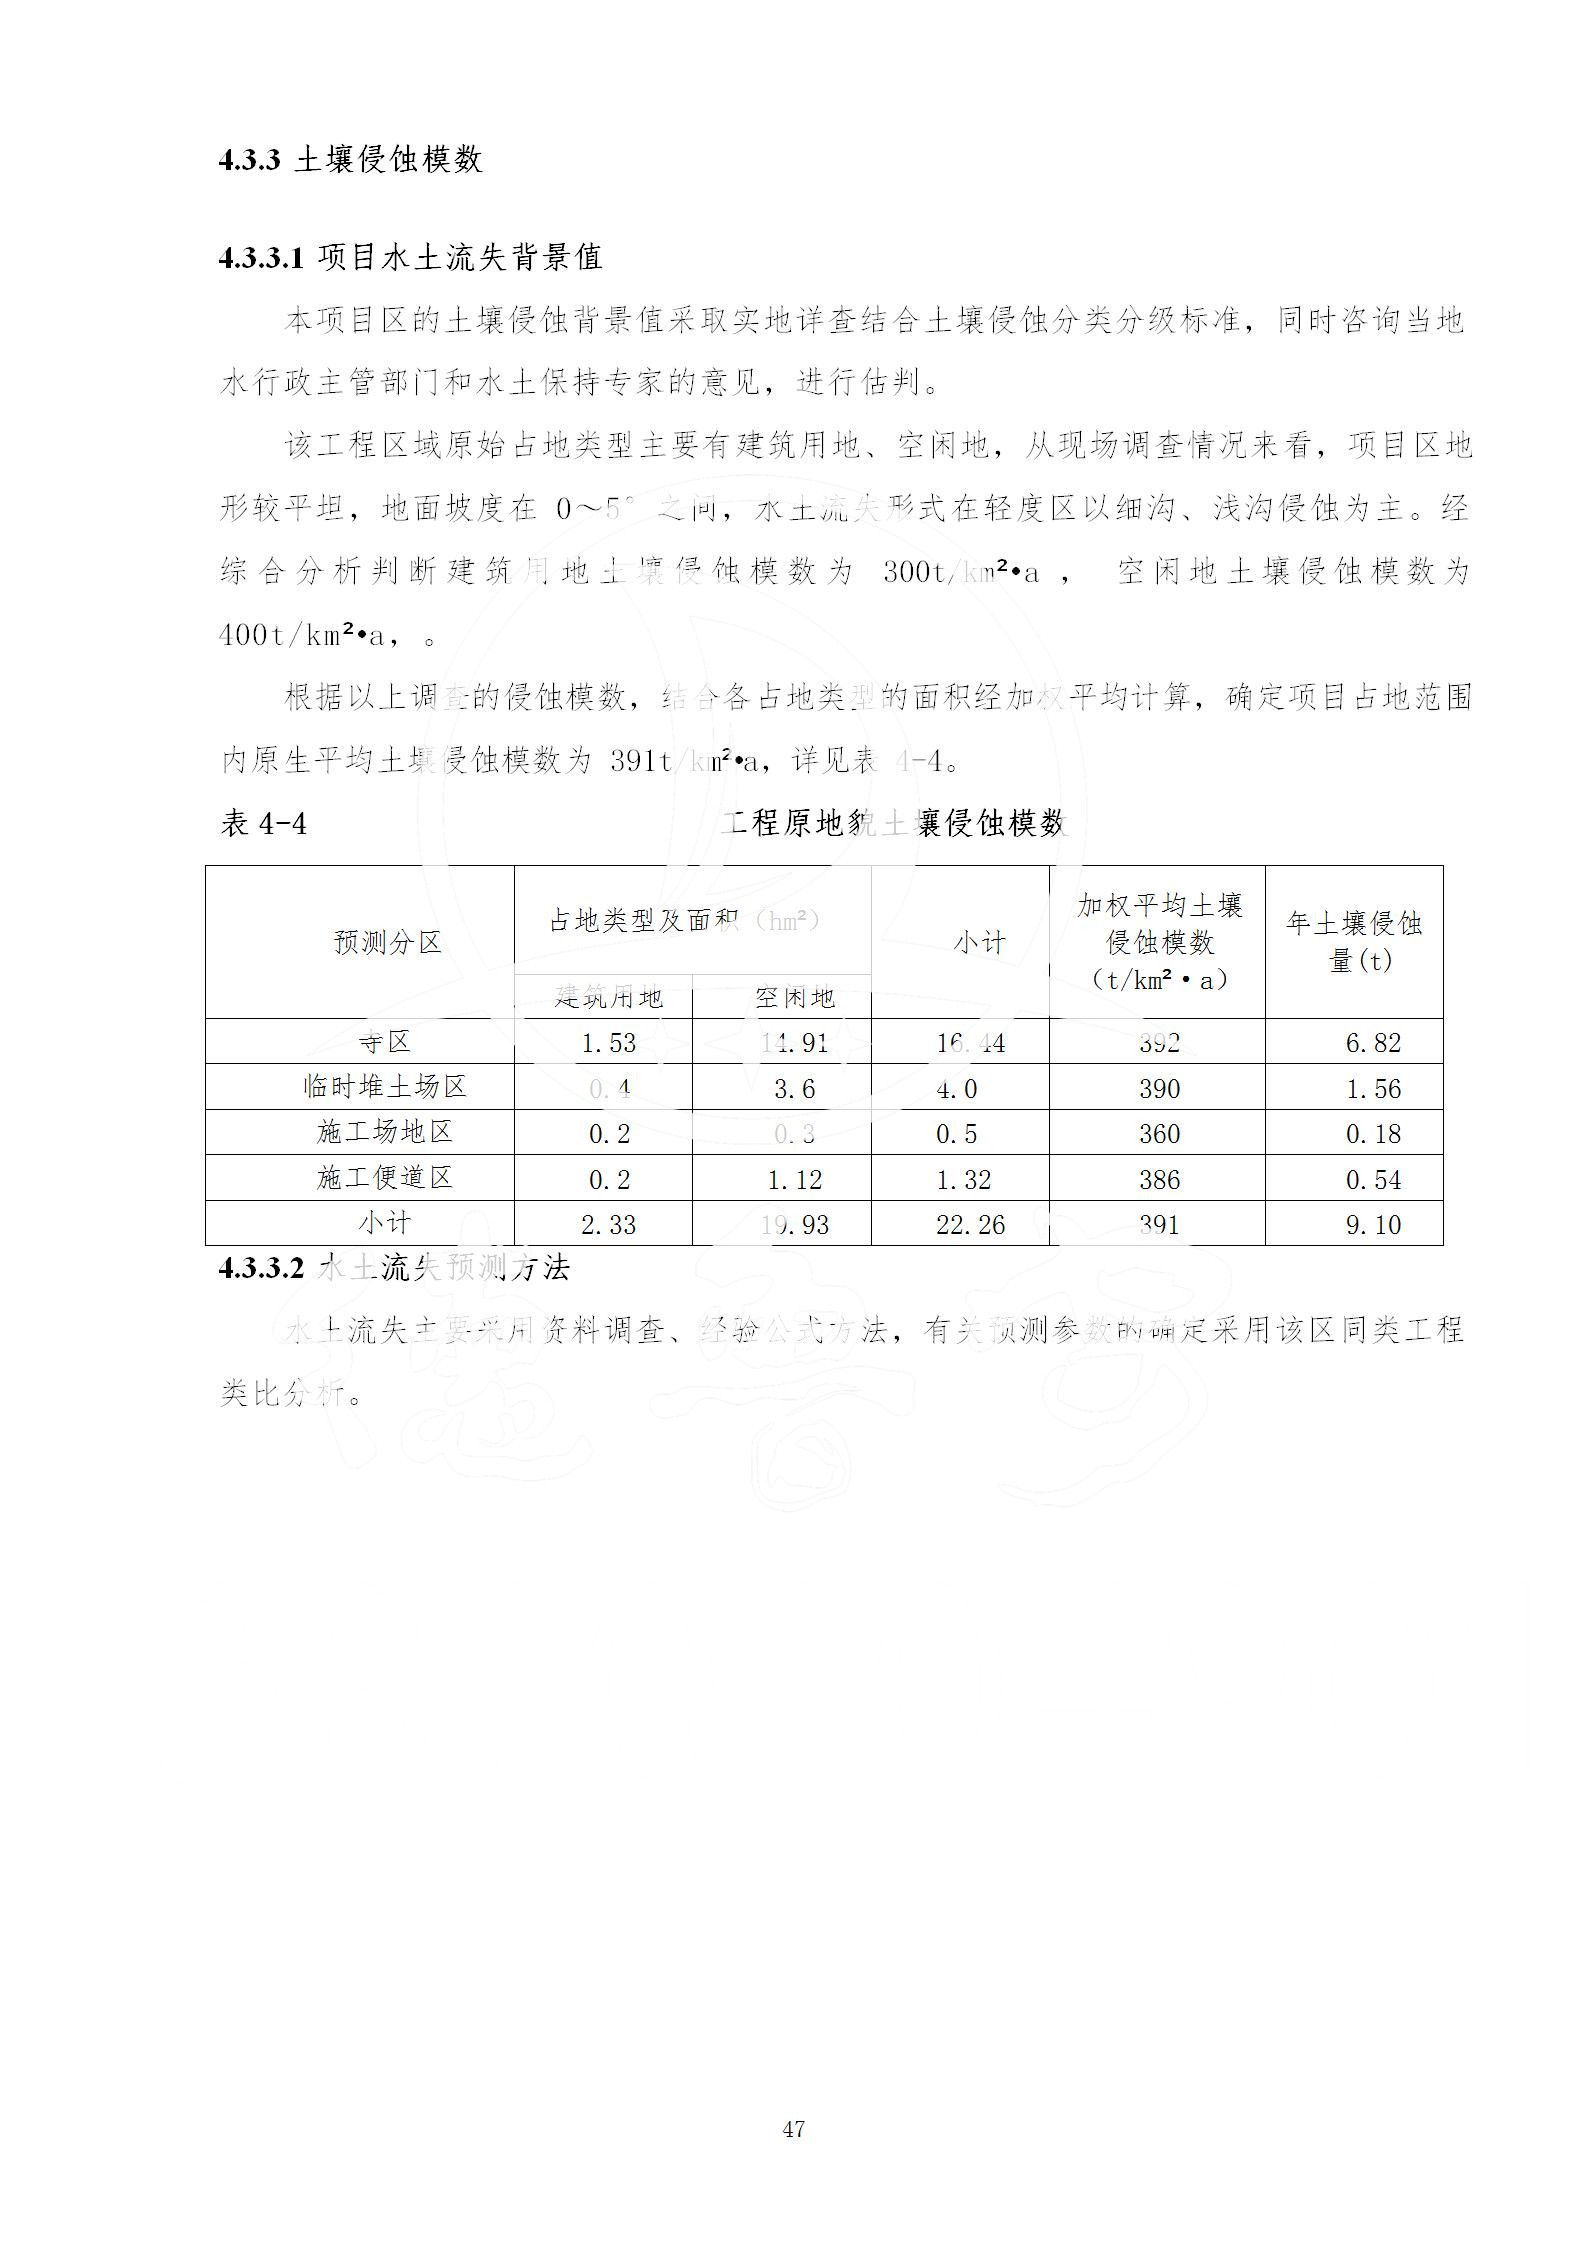 广东省大圣寺水土保持报告  修改稿5_47.jpg